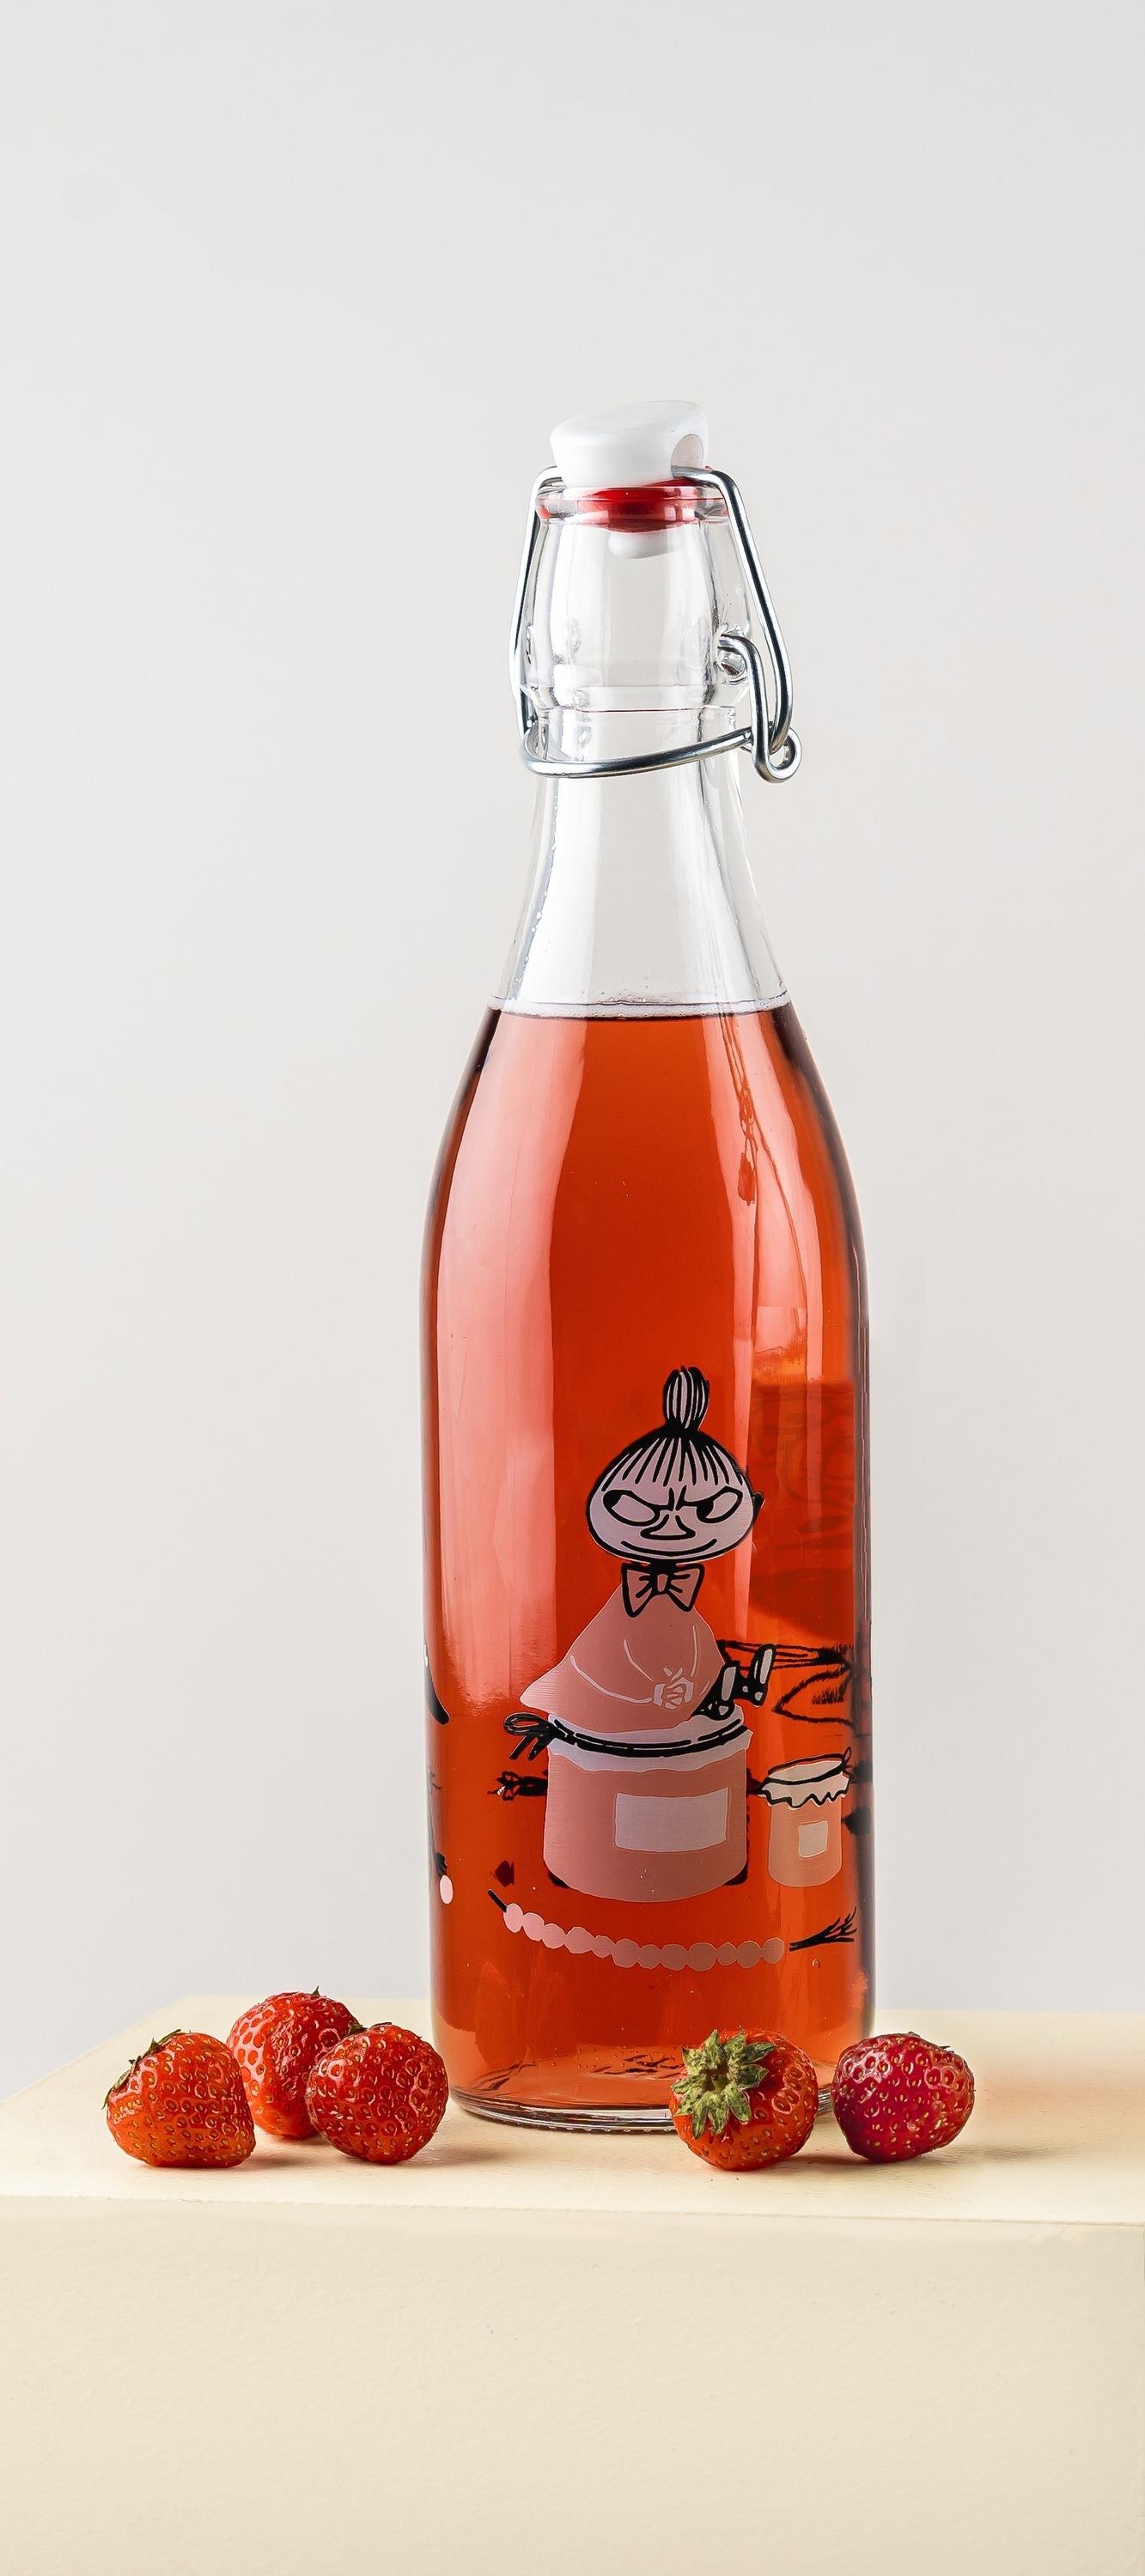 Muurla Moomin glasflaske, marmelade